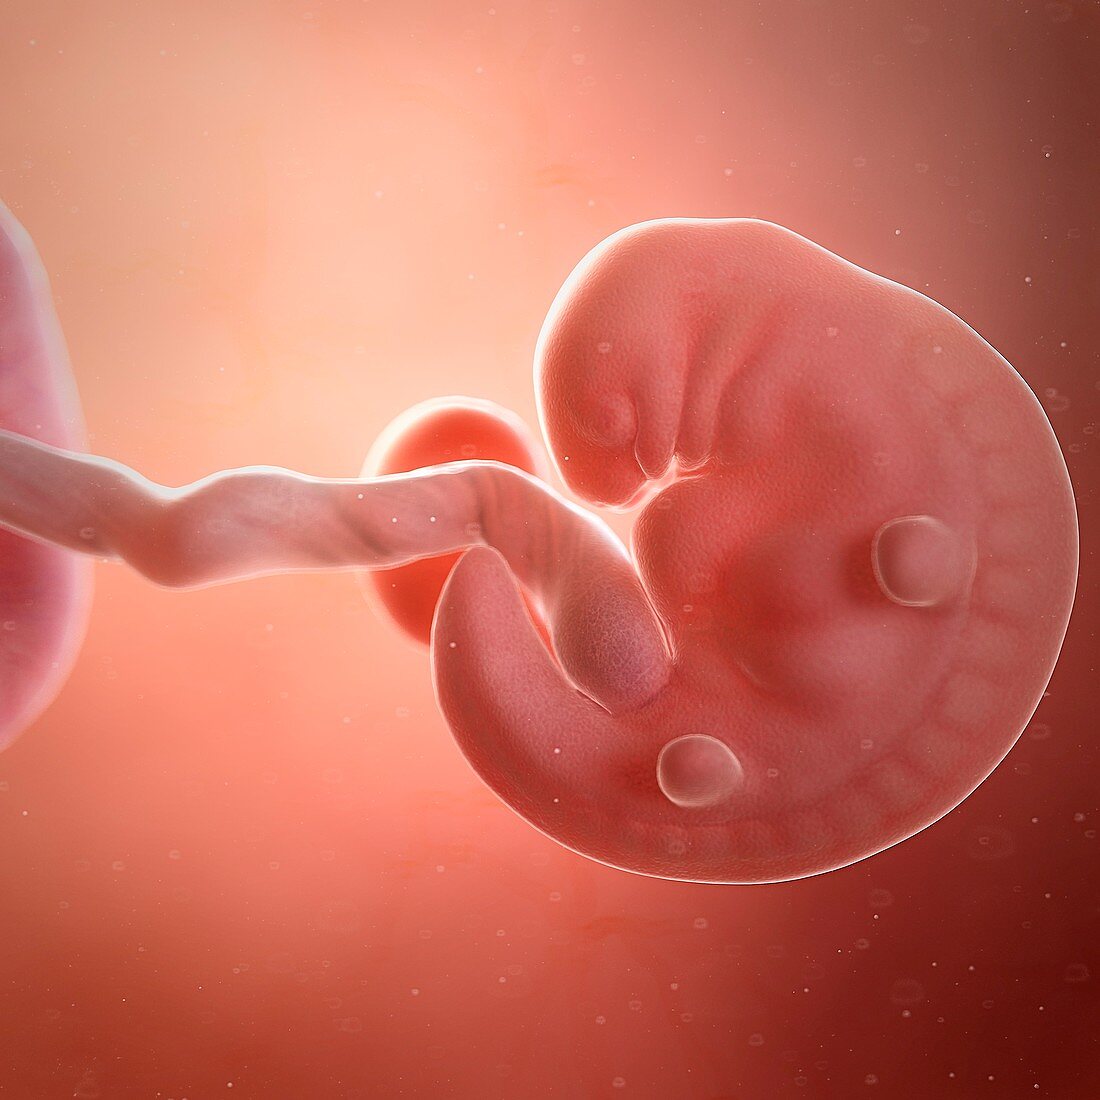 Human foetus age 6 weeks, illustration